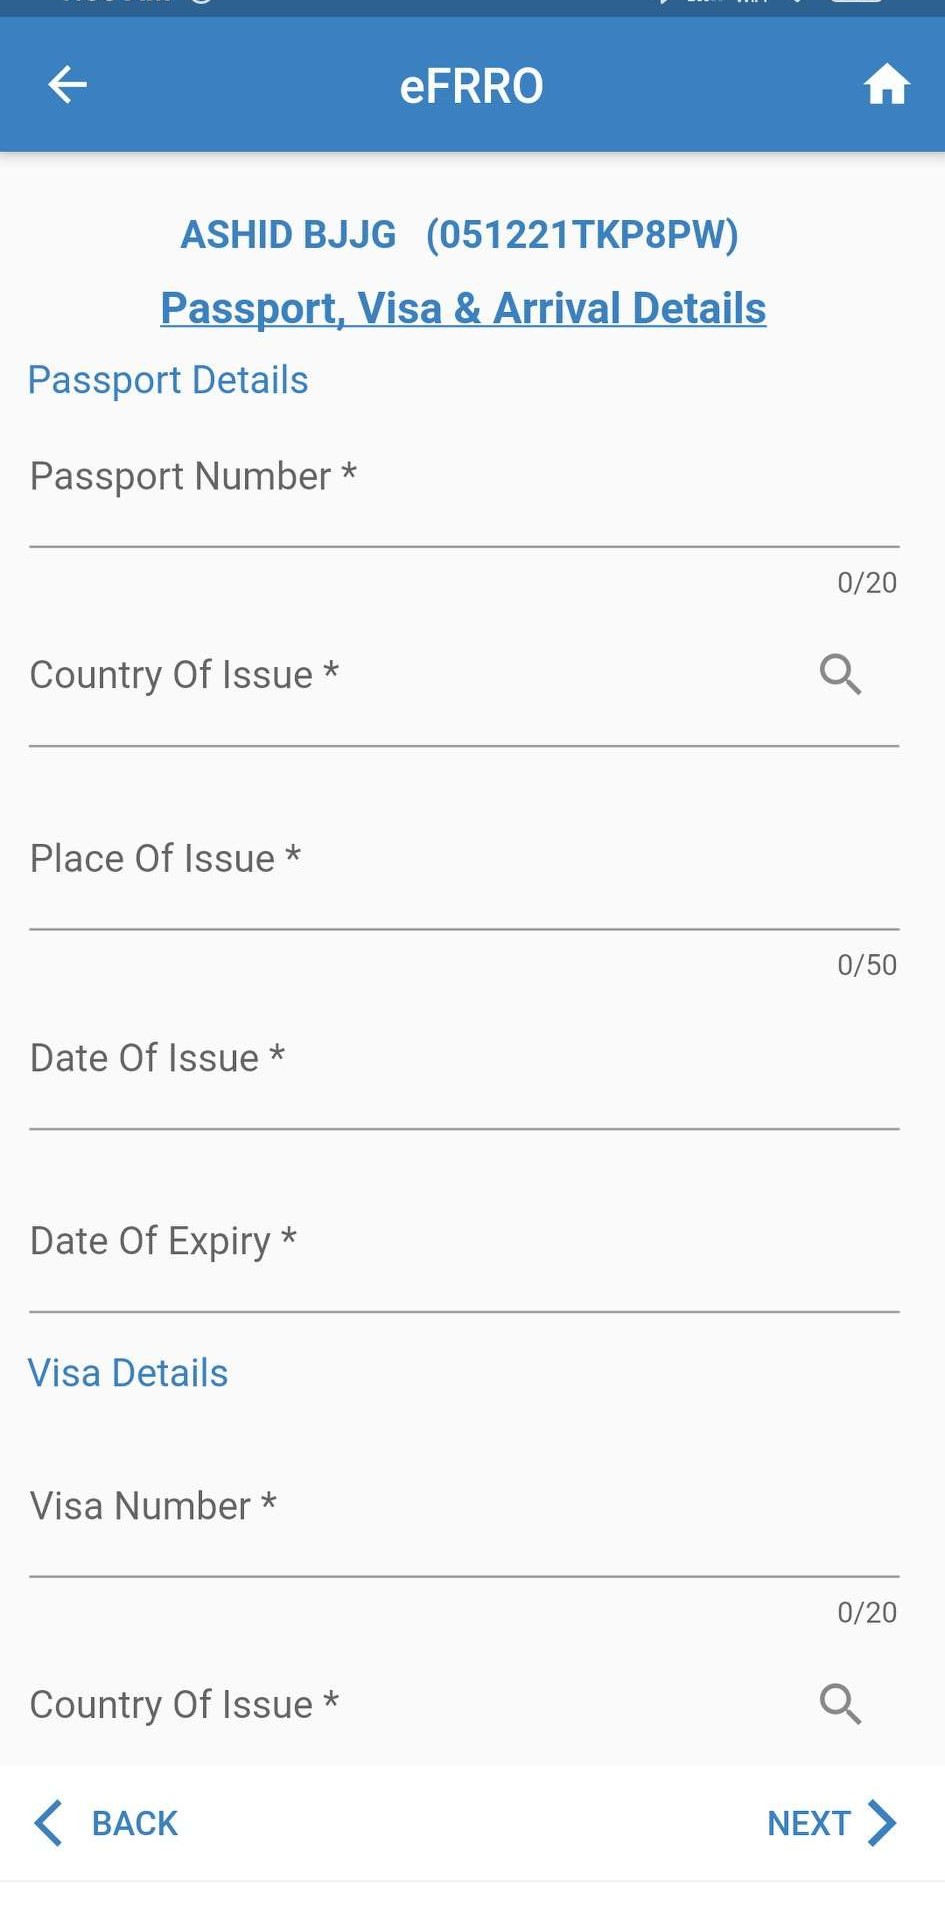 Passport-visa-Arrival-Detals